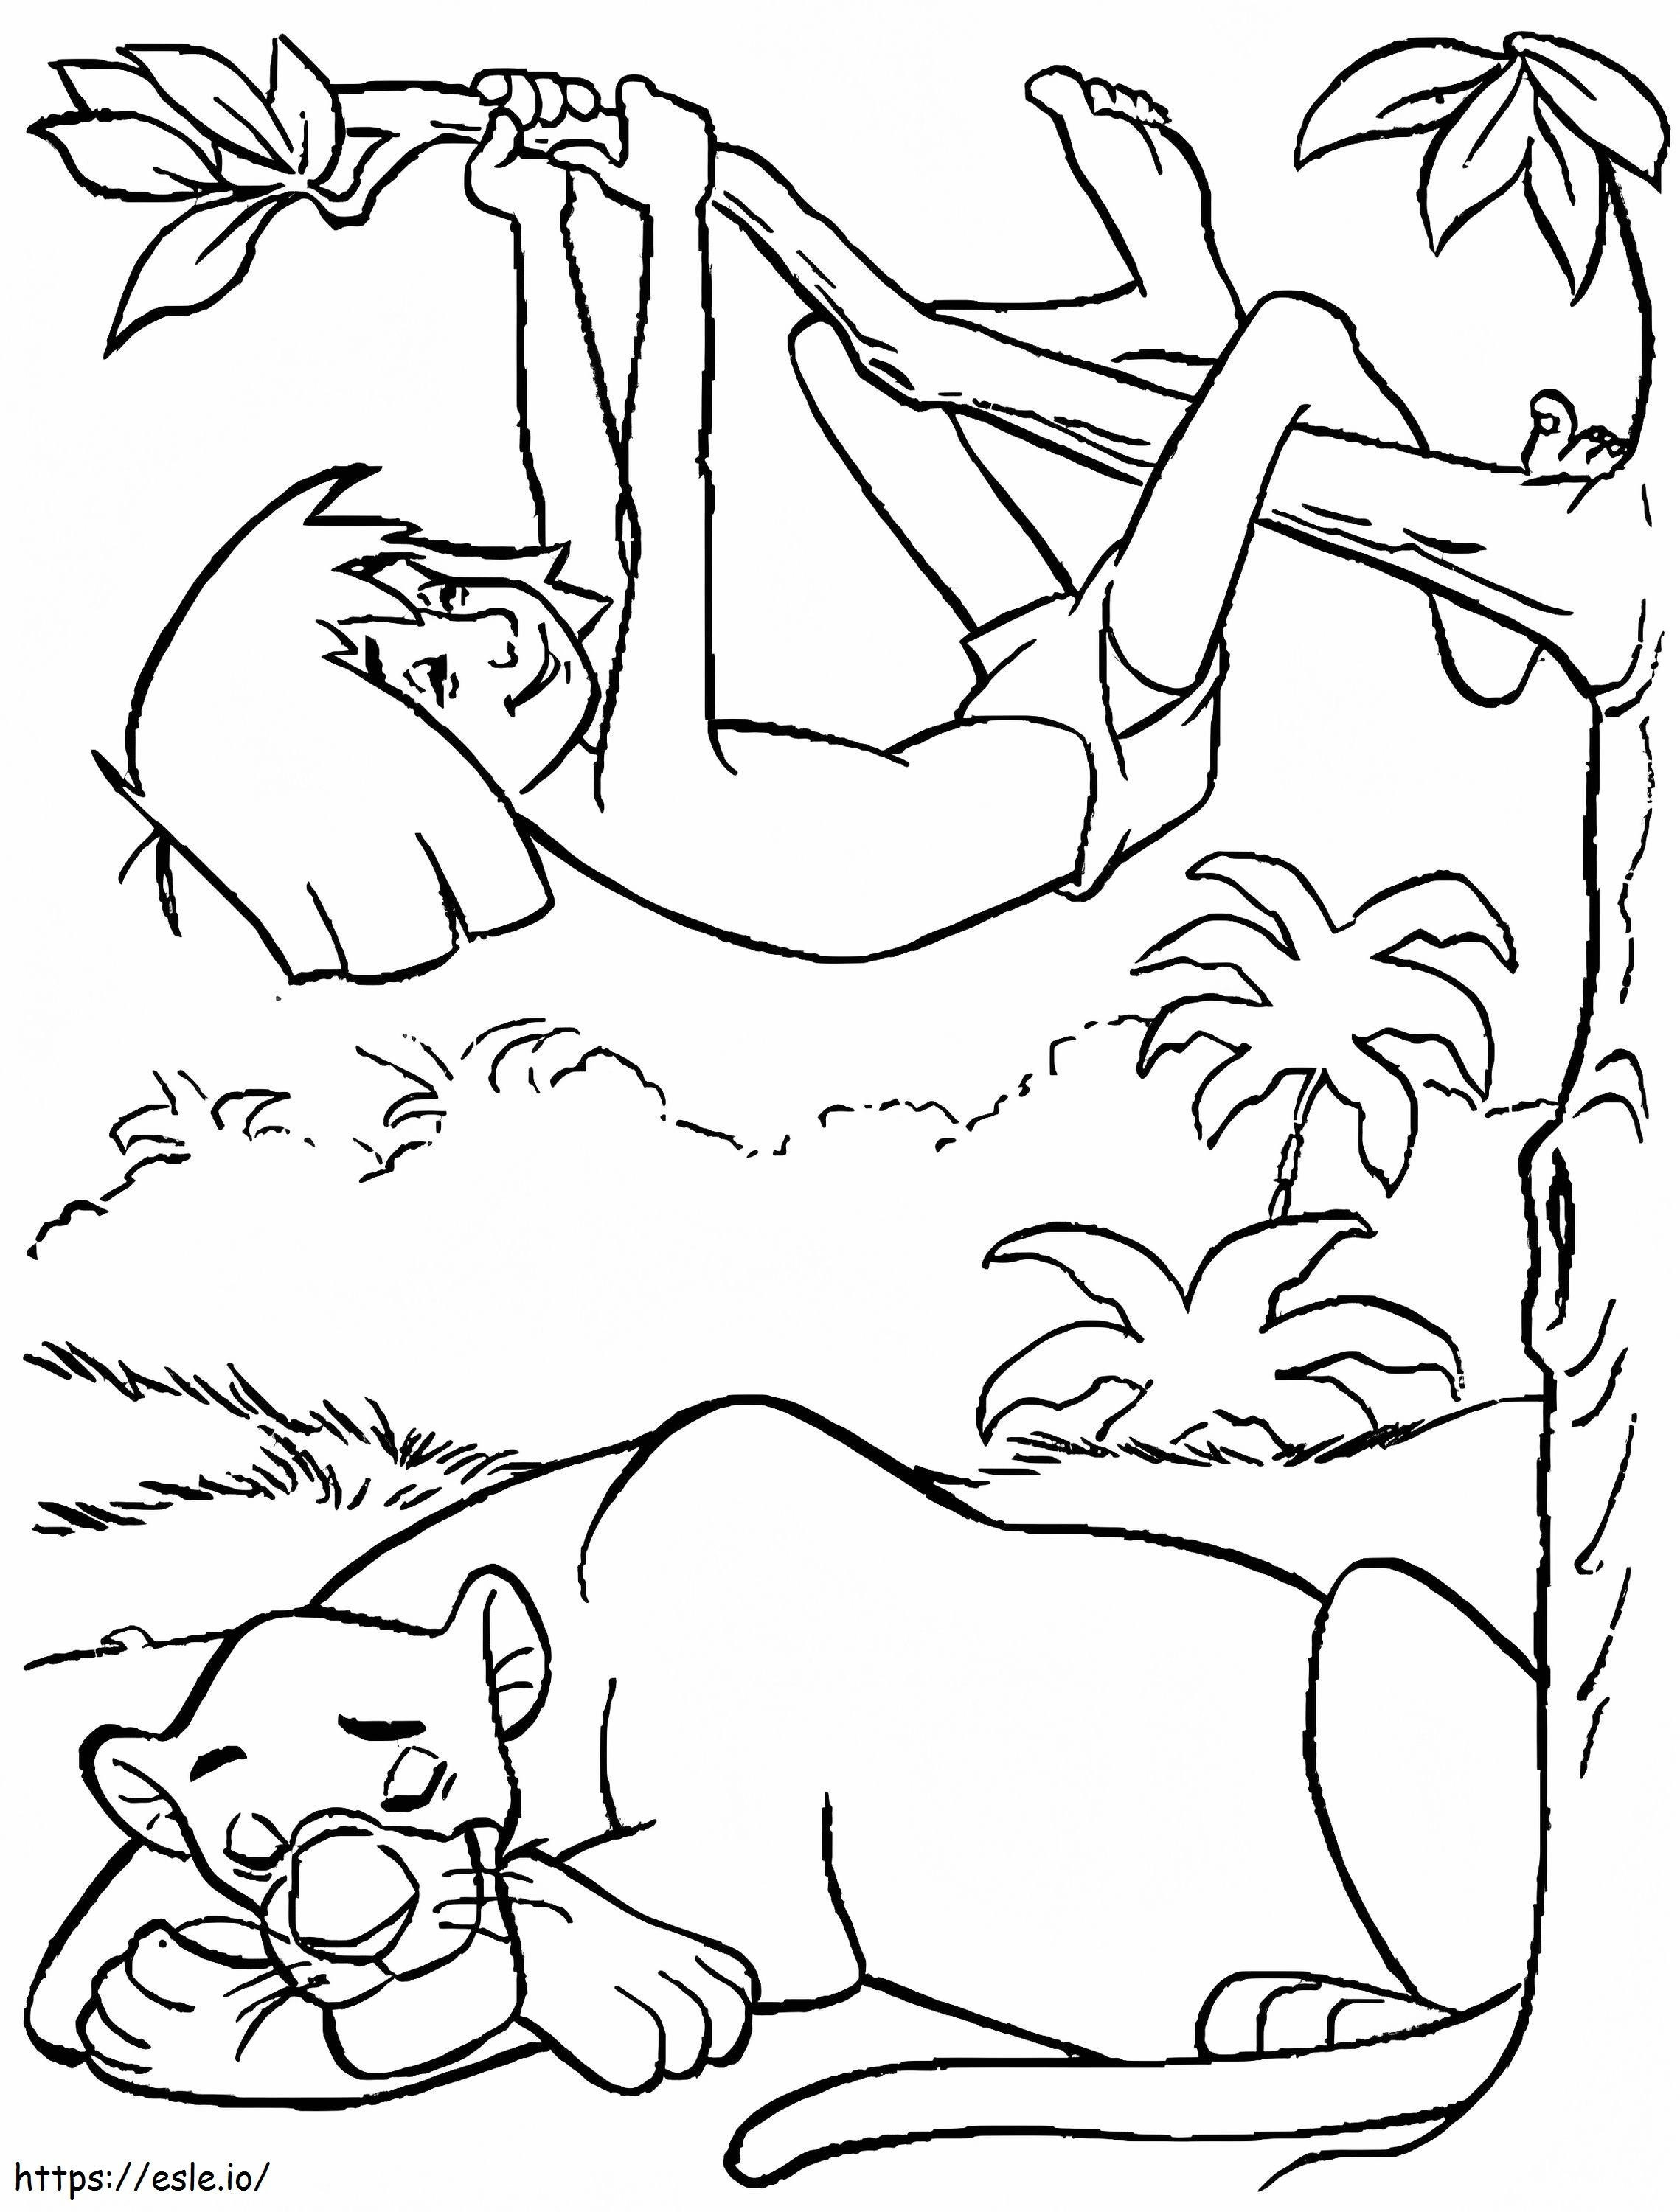 Coloriage Bagheera dormant et escaladant Mowgli à imprimer dessin